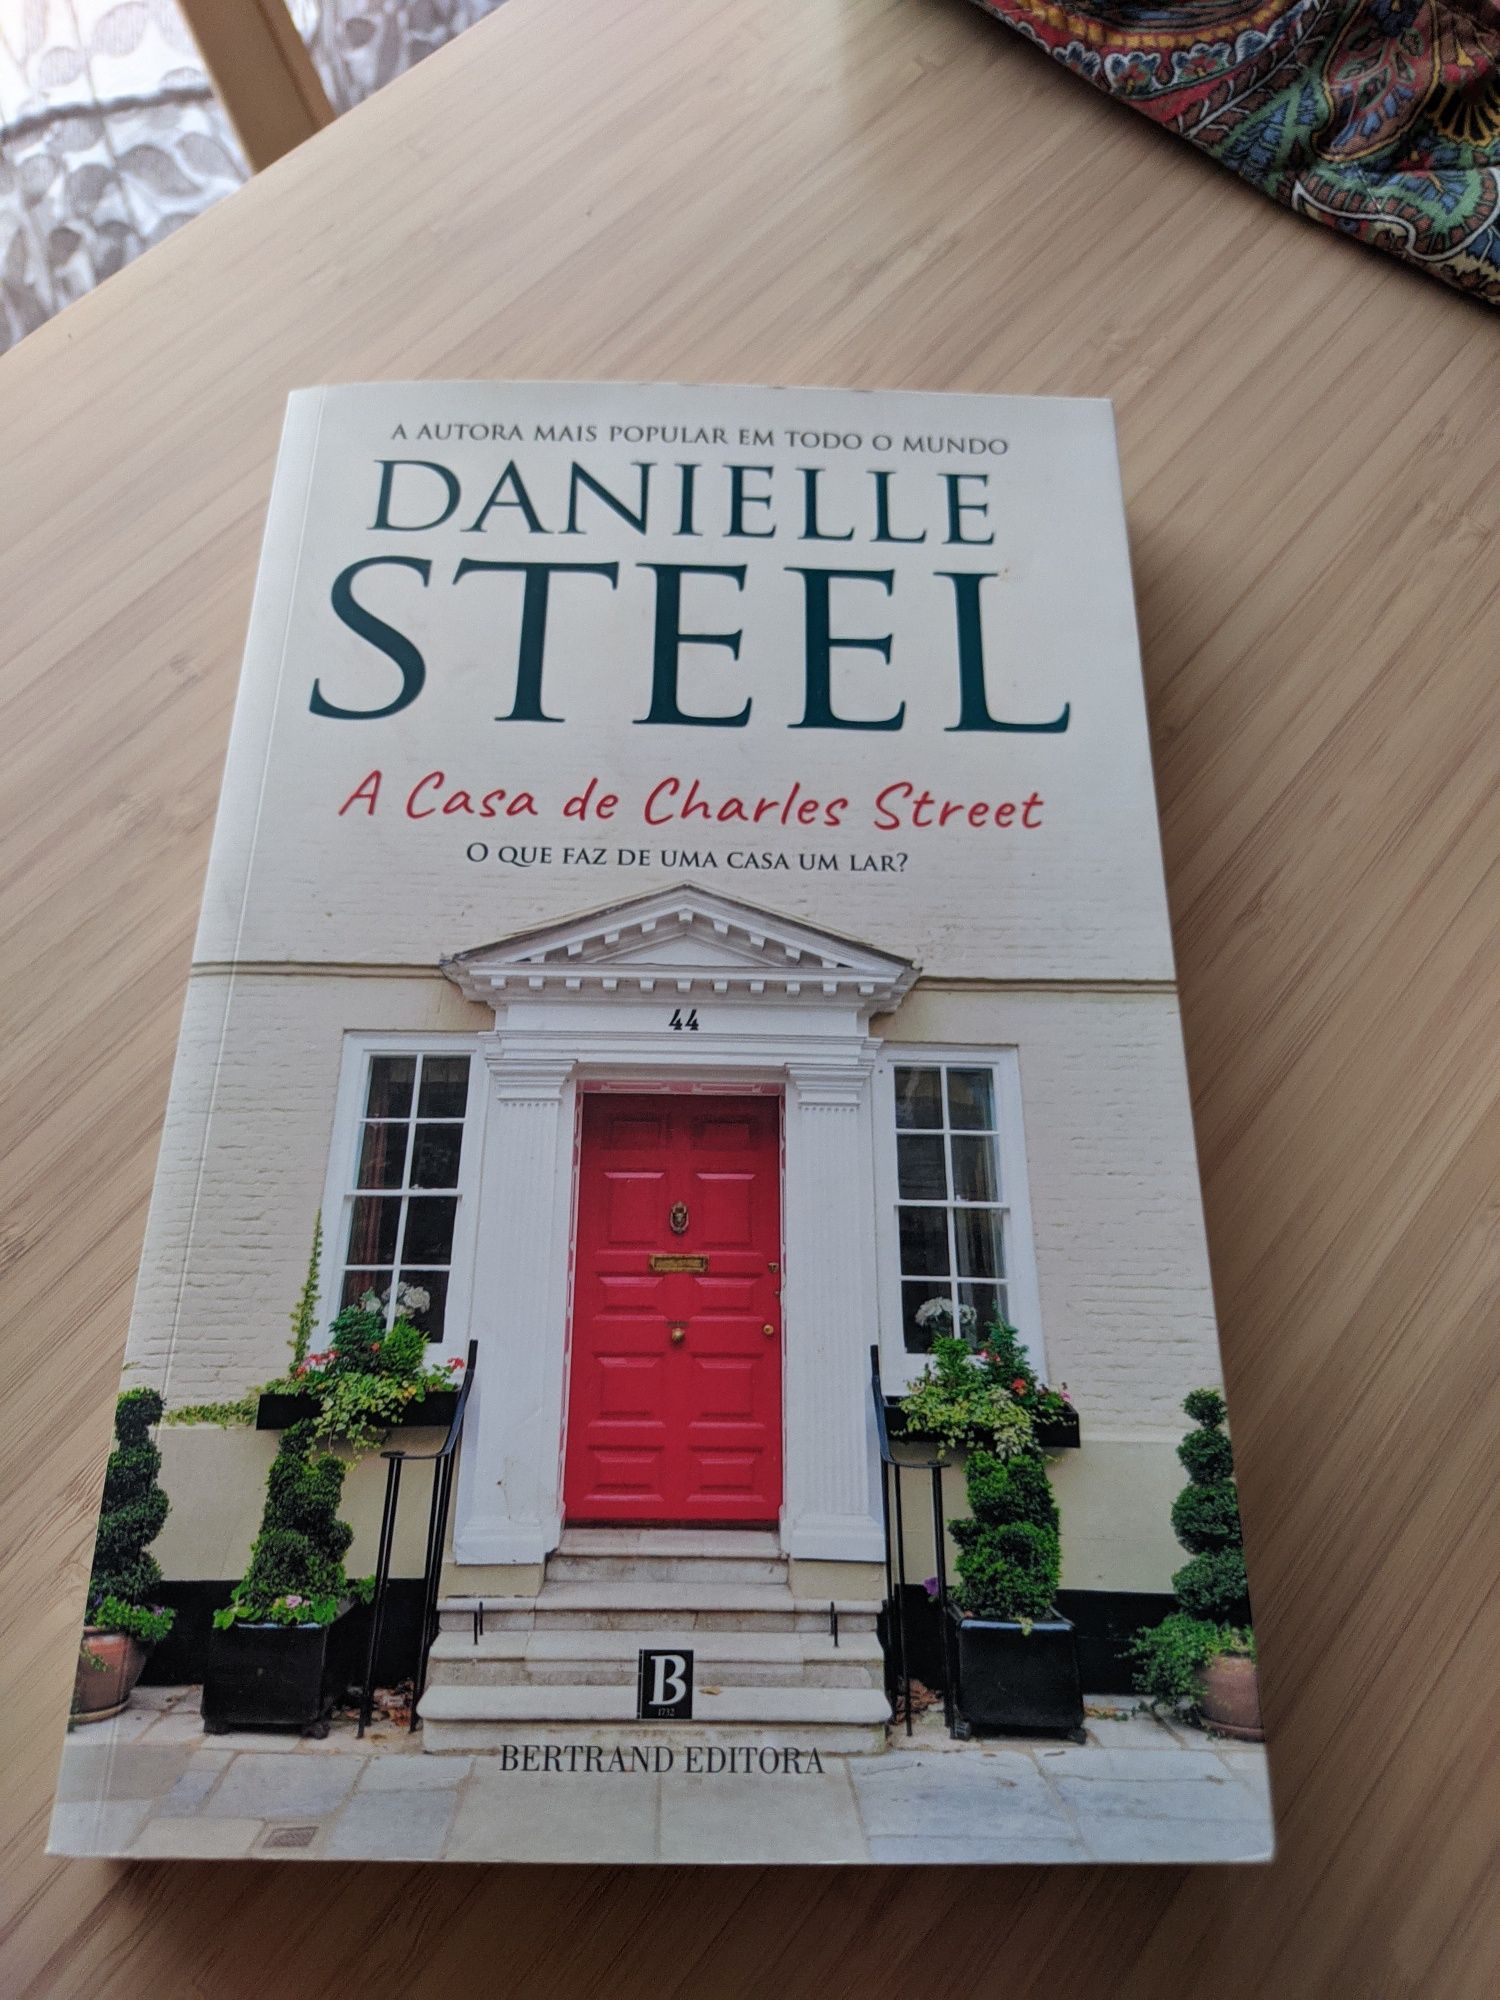 A Casa de Charles Street - Danielle Steel
14,94 €
Worten.pt
+2,